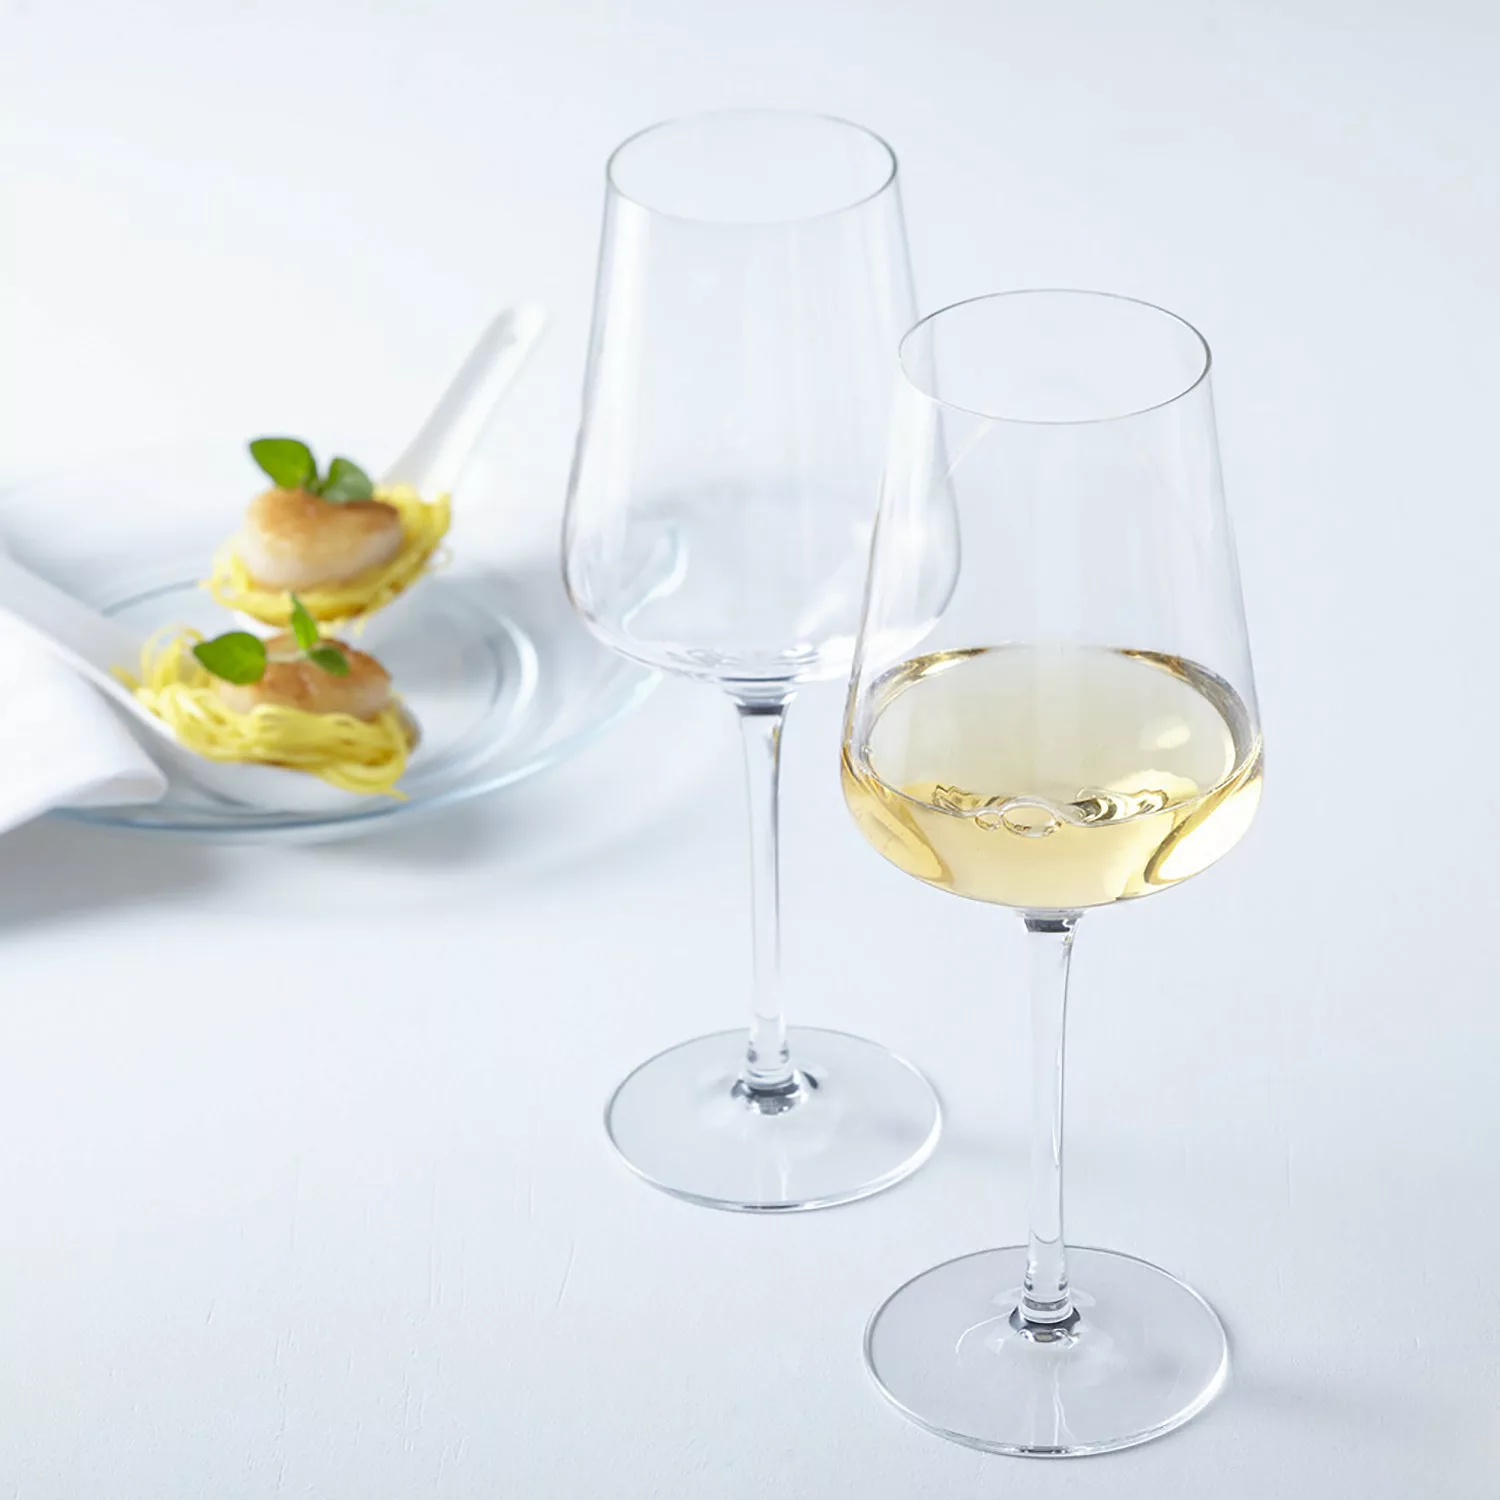 Leonardo Puccini Weißweinglas 560ml - 6er-Set günstig online kaufen